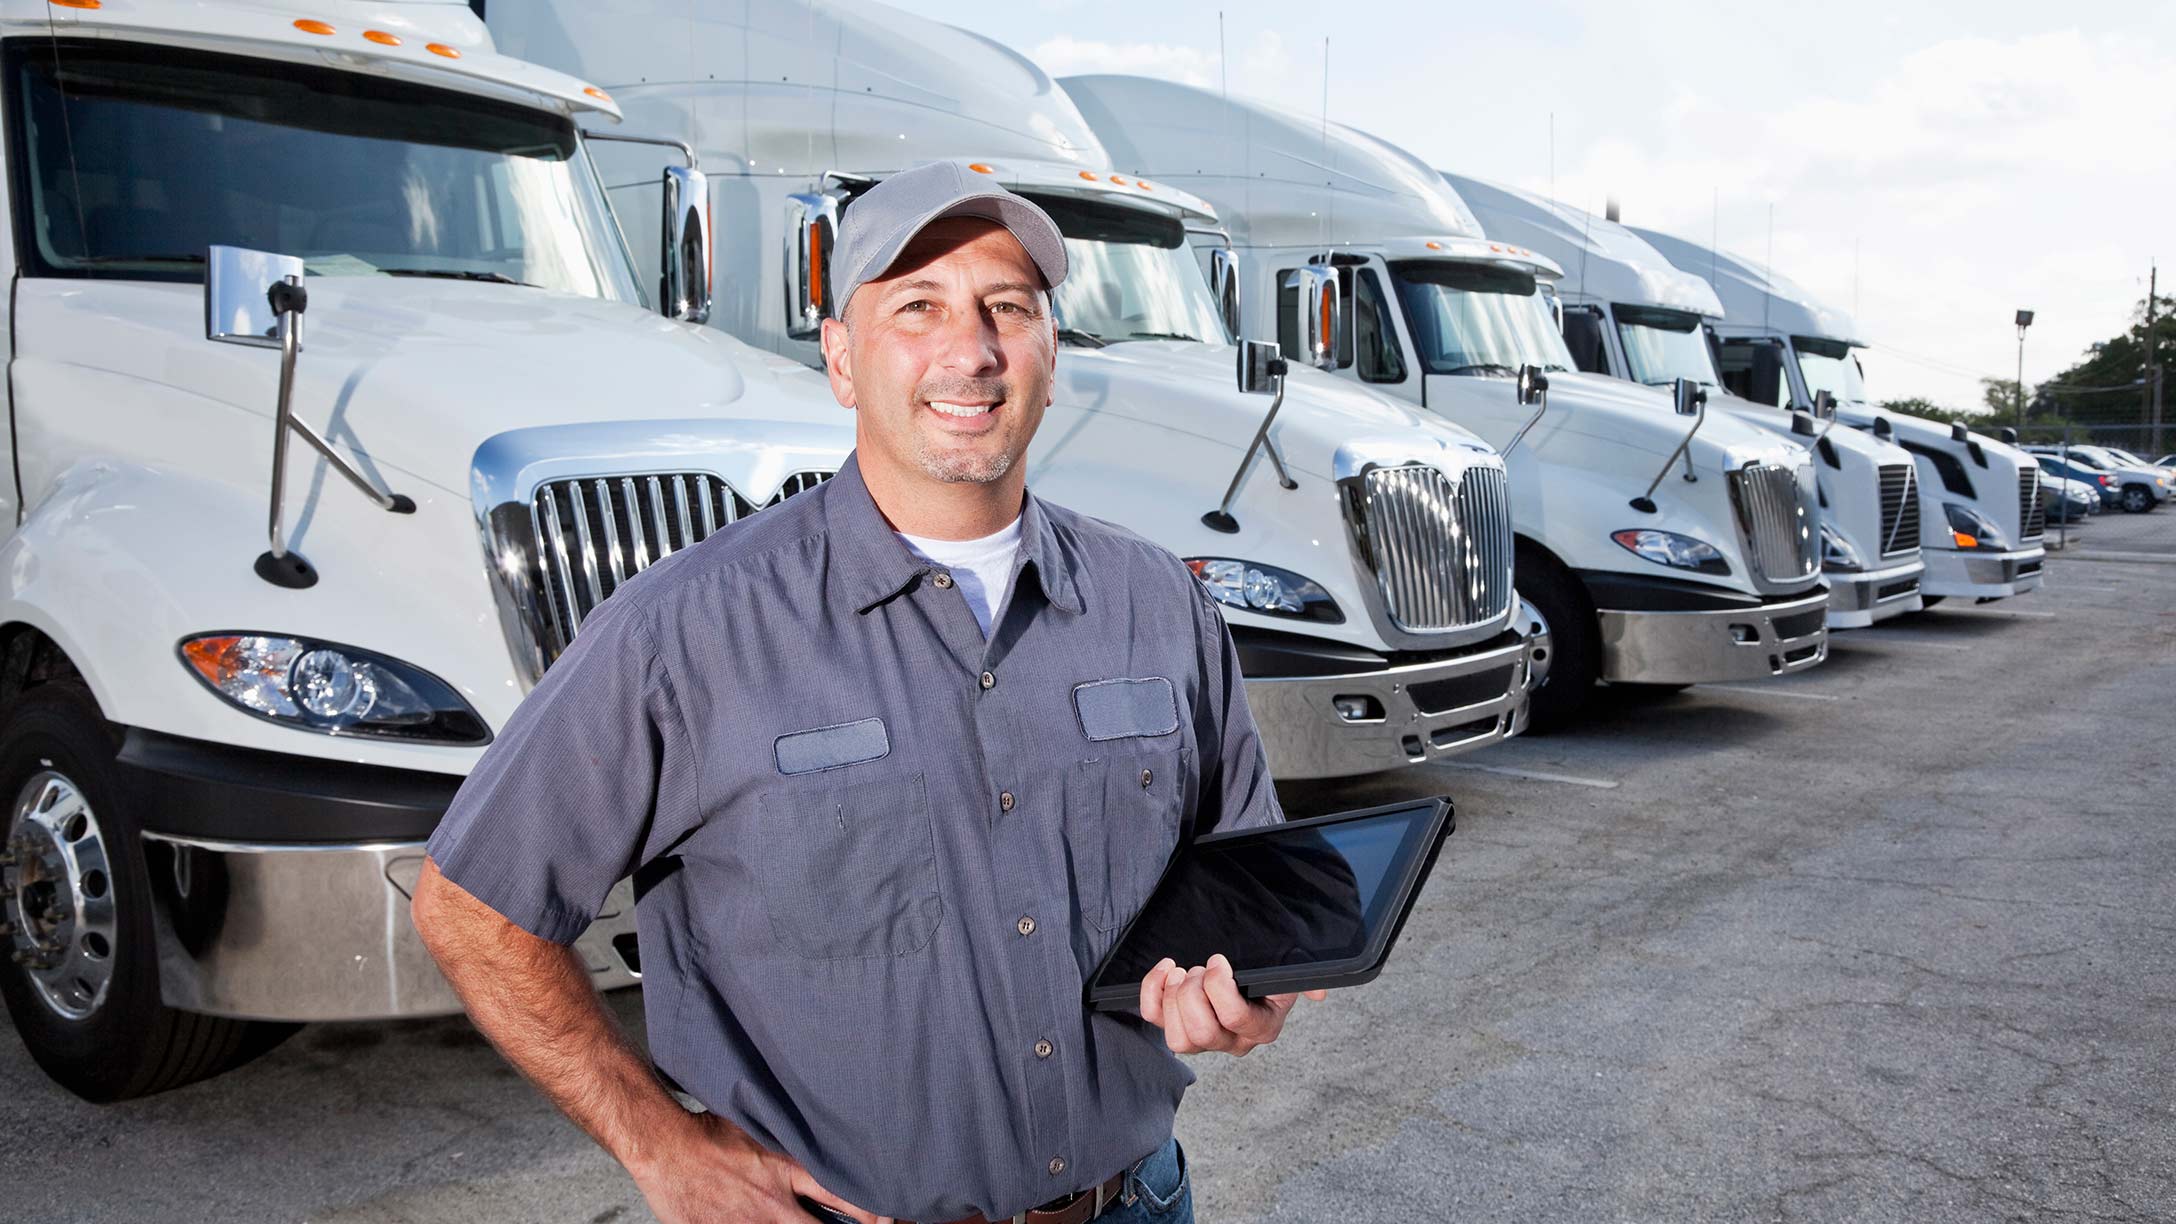 A fleet manager standing in front of a fleet of trucks